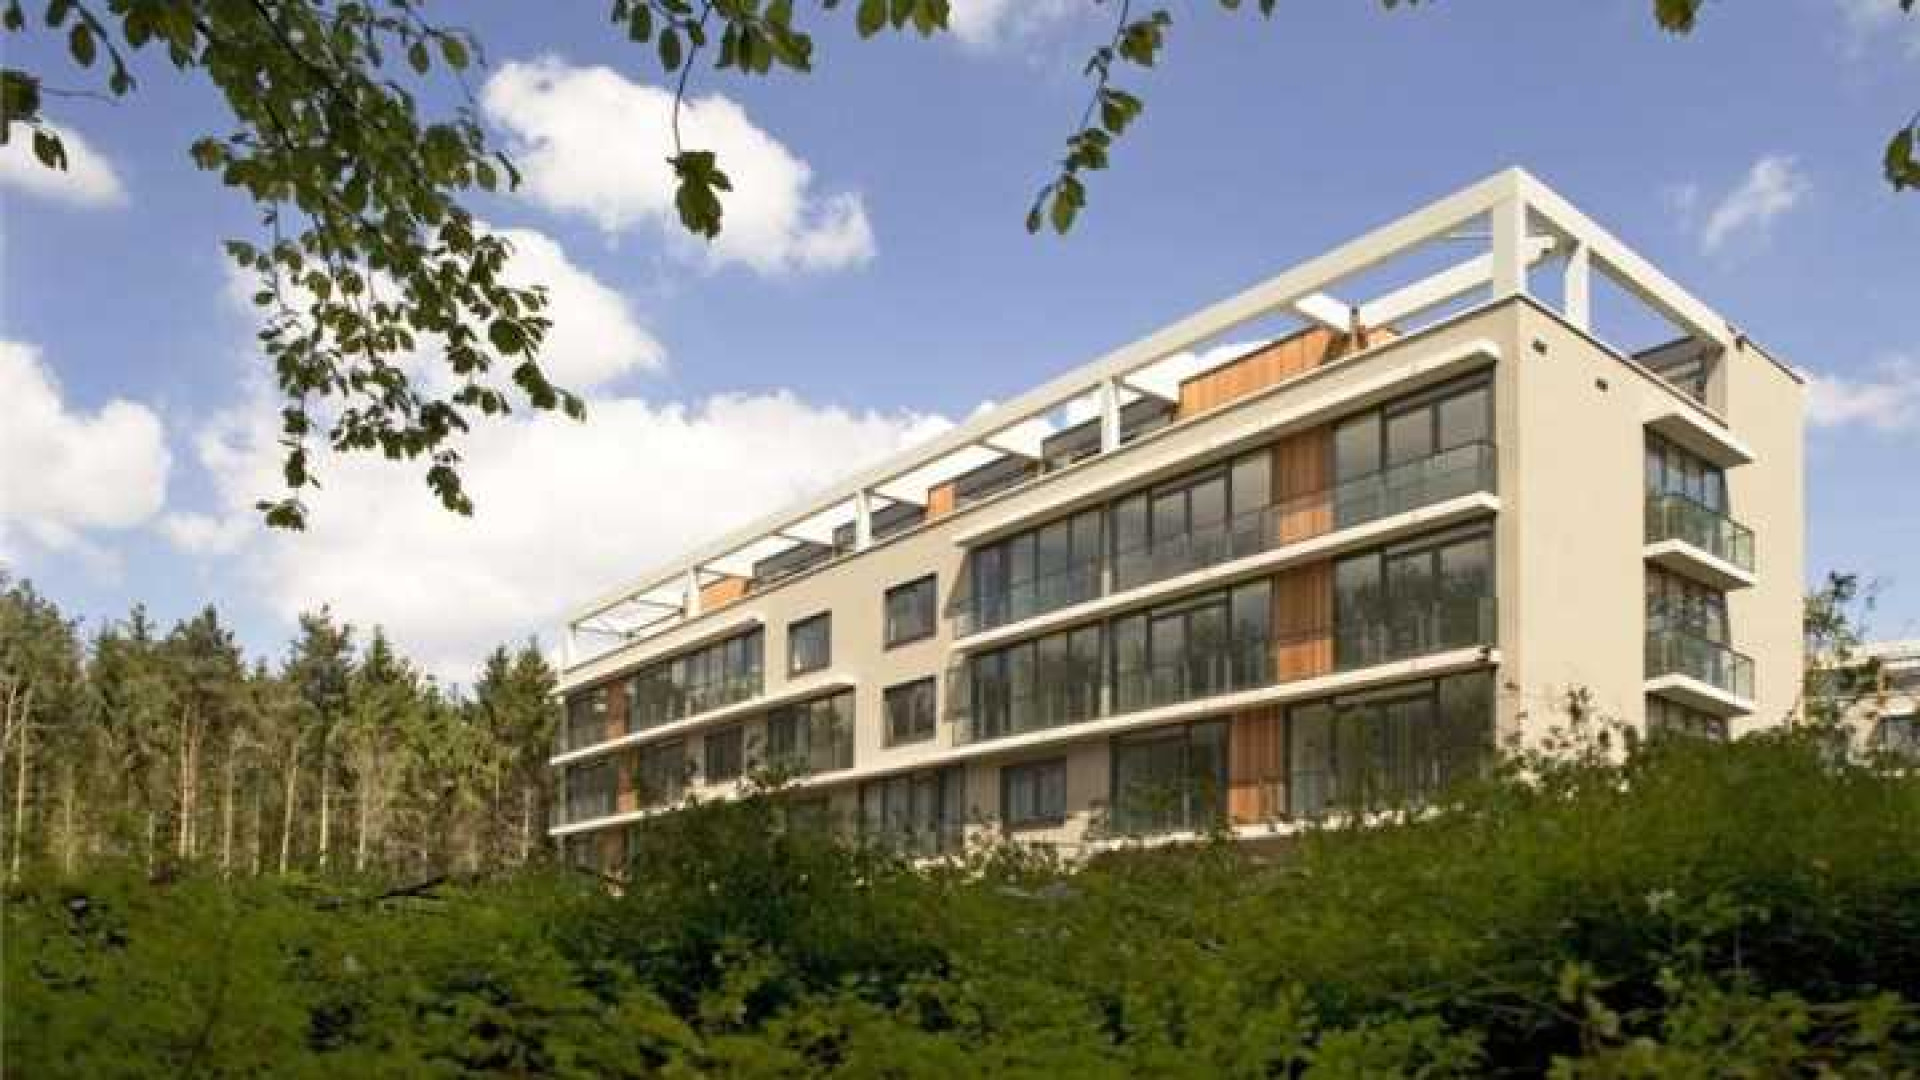 Ilse de Lange huurt luxe penthouse in Hilversum. Zie foto's 13